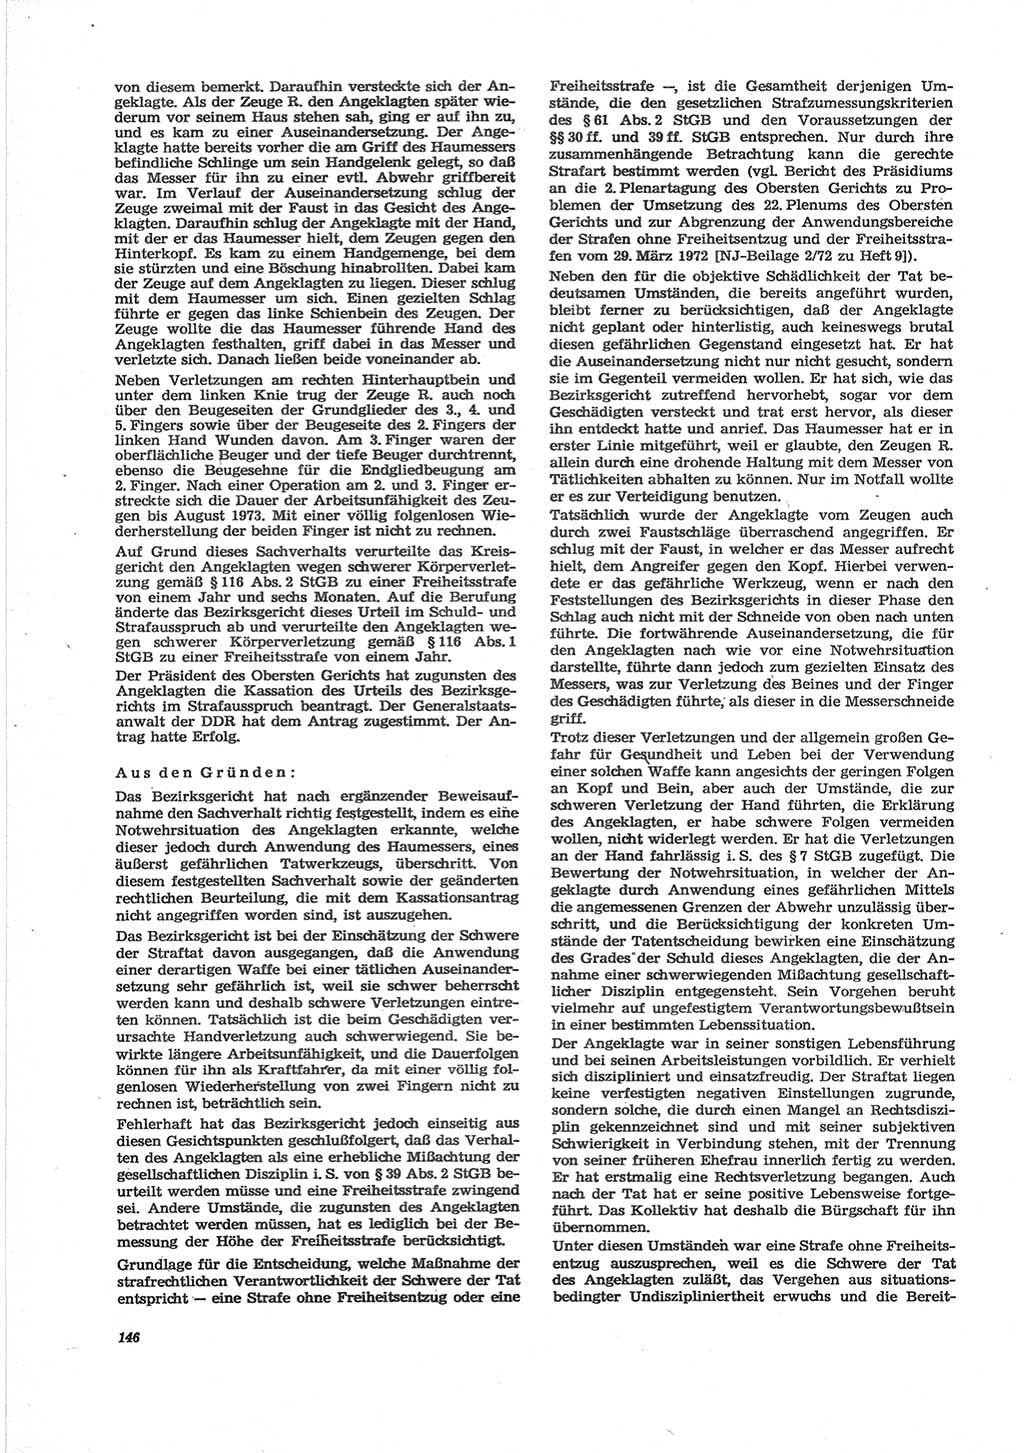 Neue Justiz (NJ), Zeitschrift für Recht und Rechtswissenschaft [Deutsche Demokratische Republik (DDR)], 28. Jahrgang 1974, Seite 146 (NJ DDR 1974, S. 146)